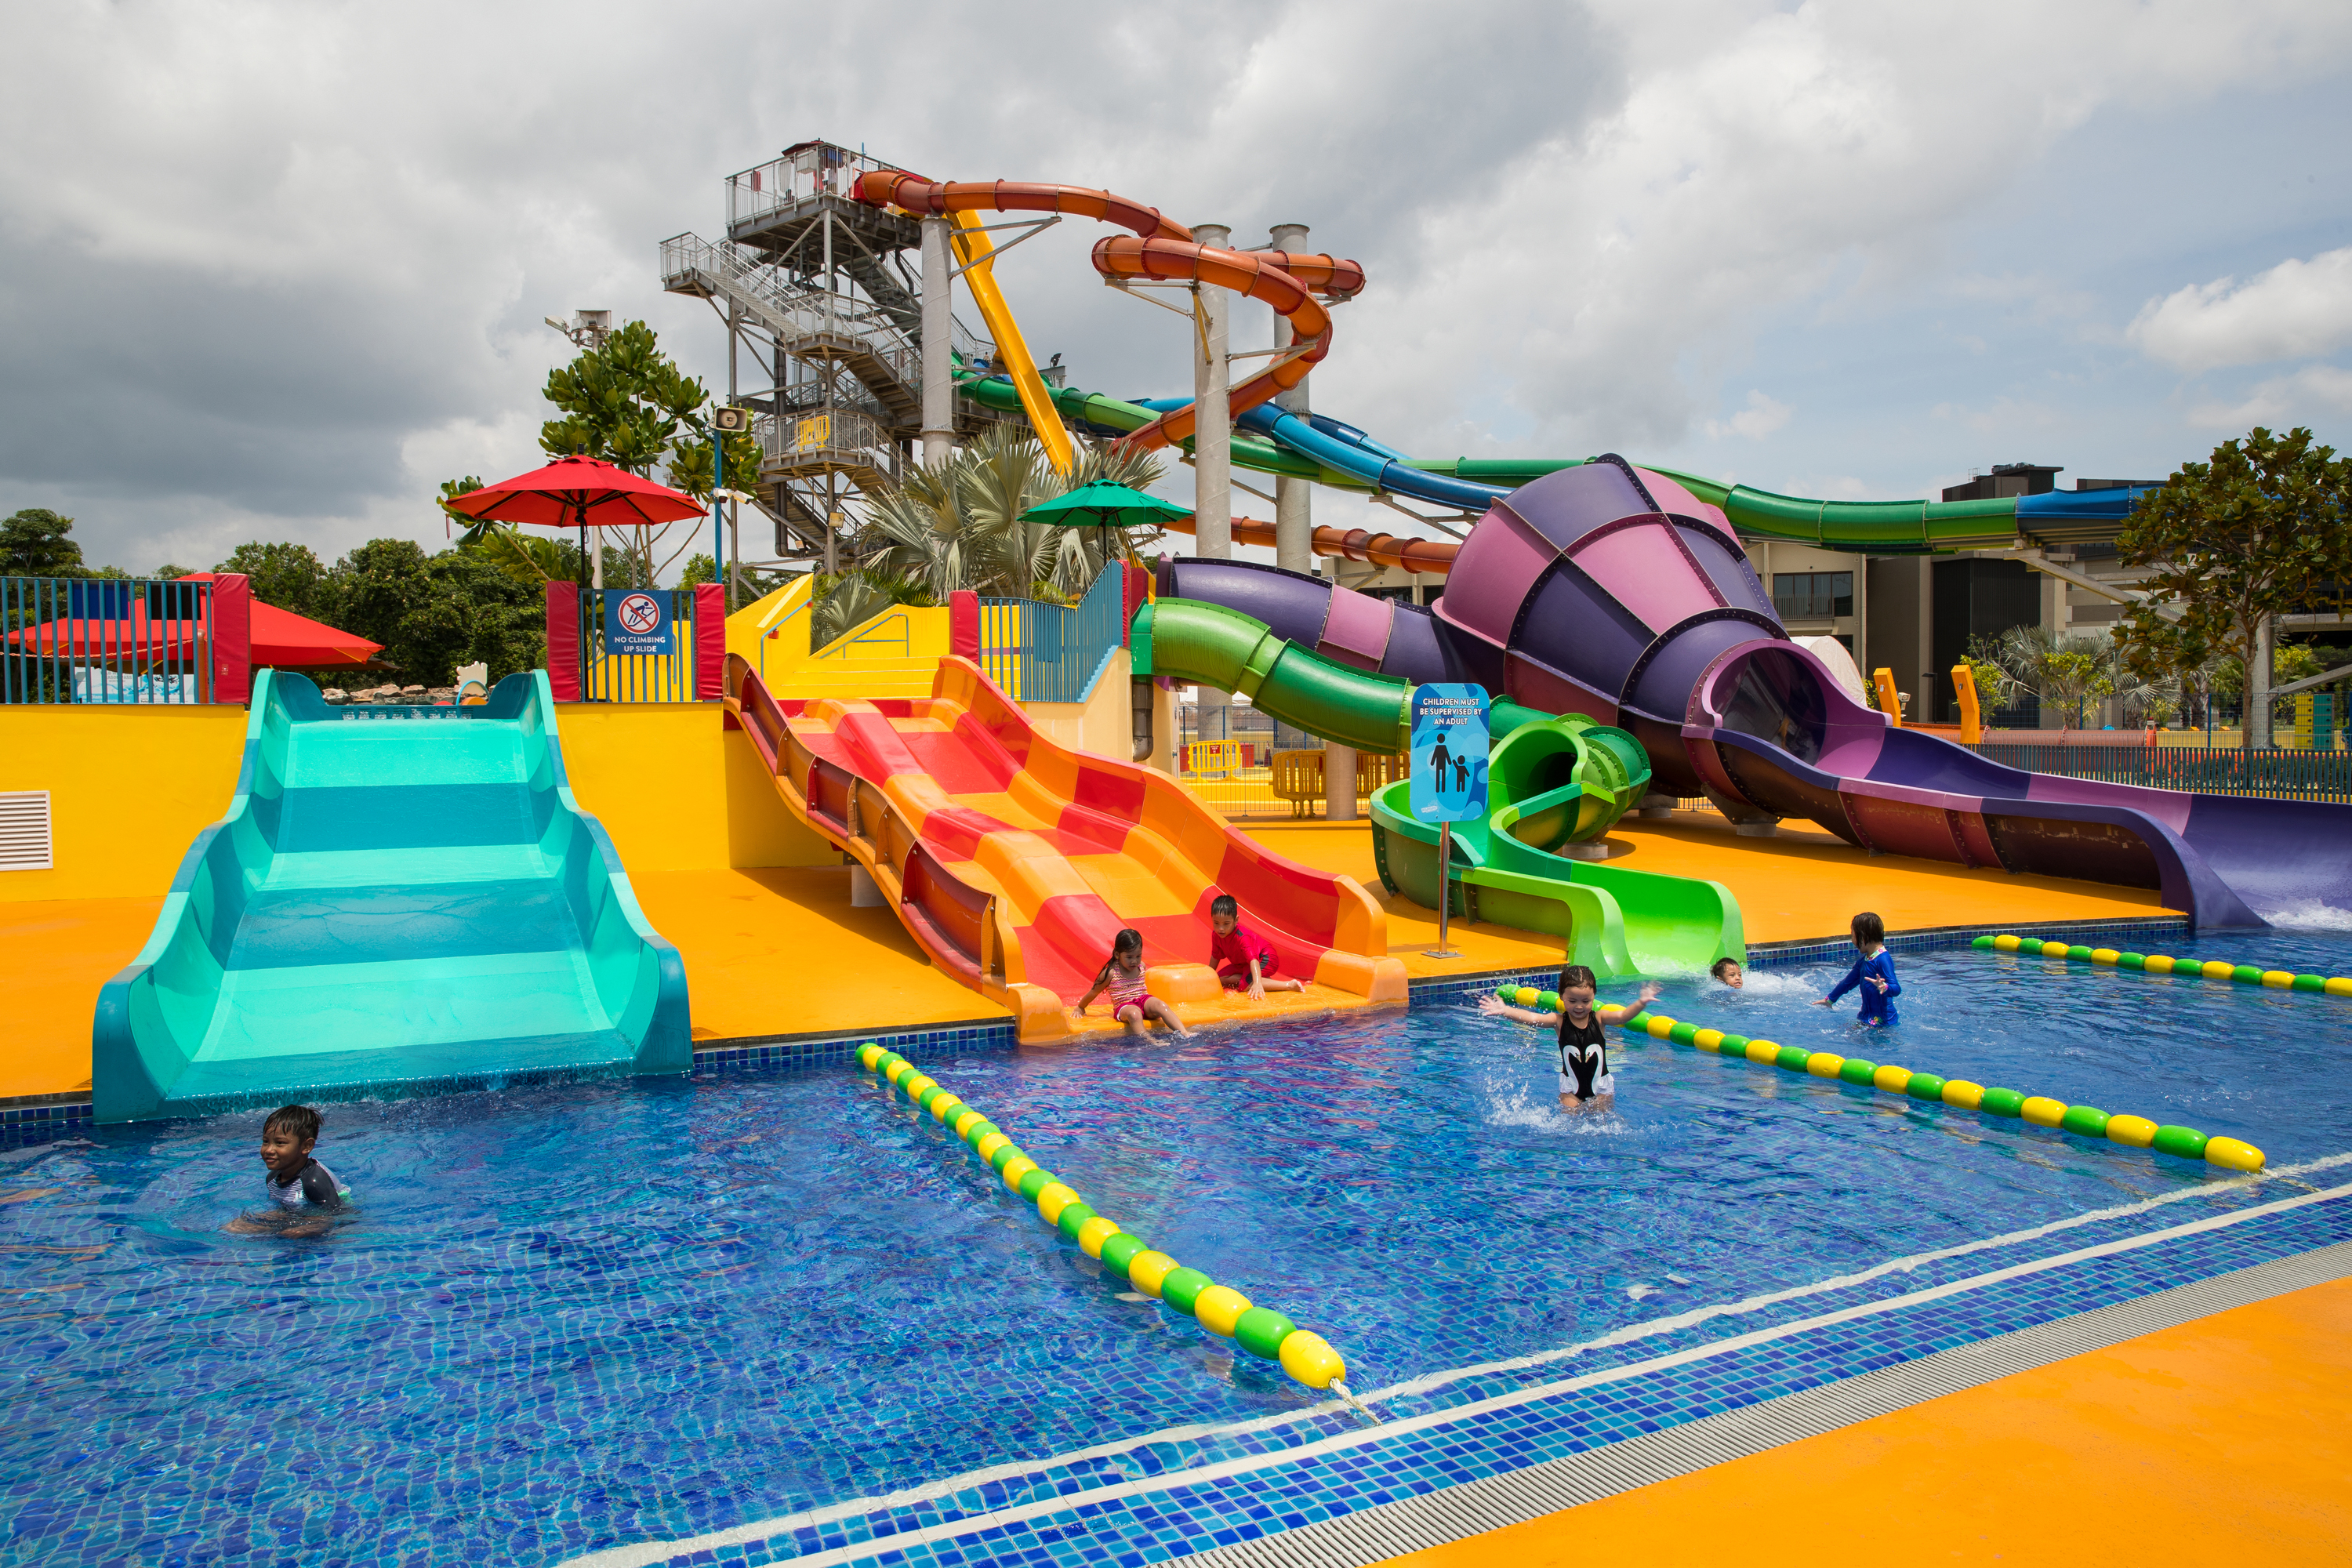 Kidz zone kiddie amusement and water park in Wild Wild Wet Singapore